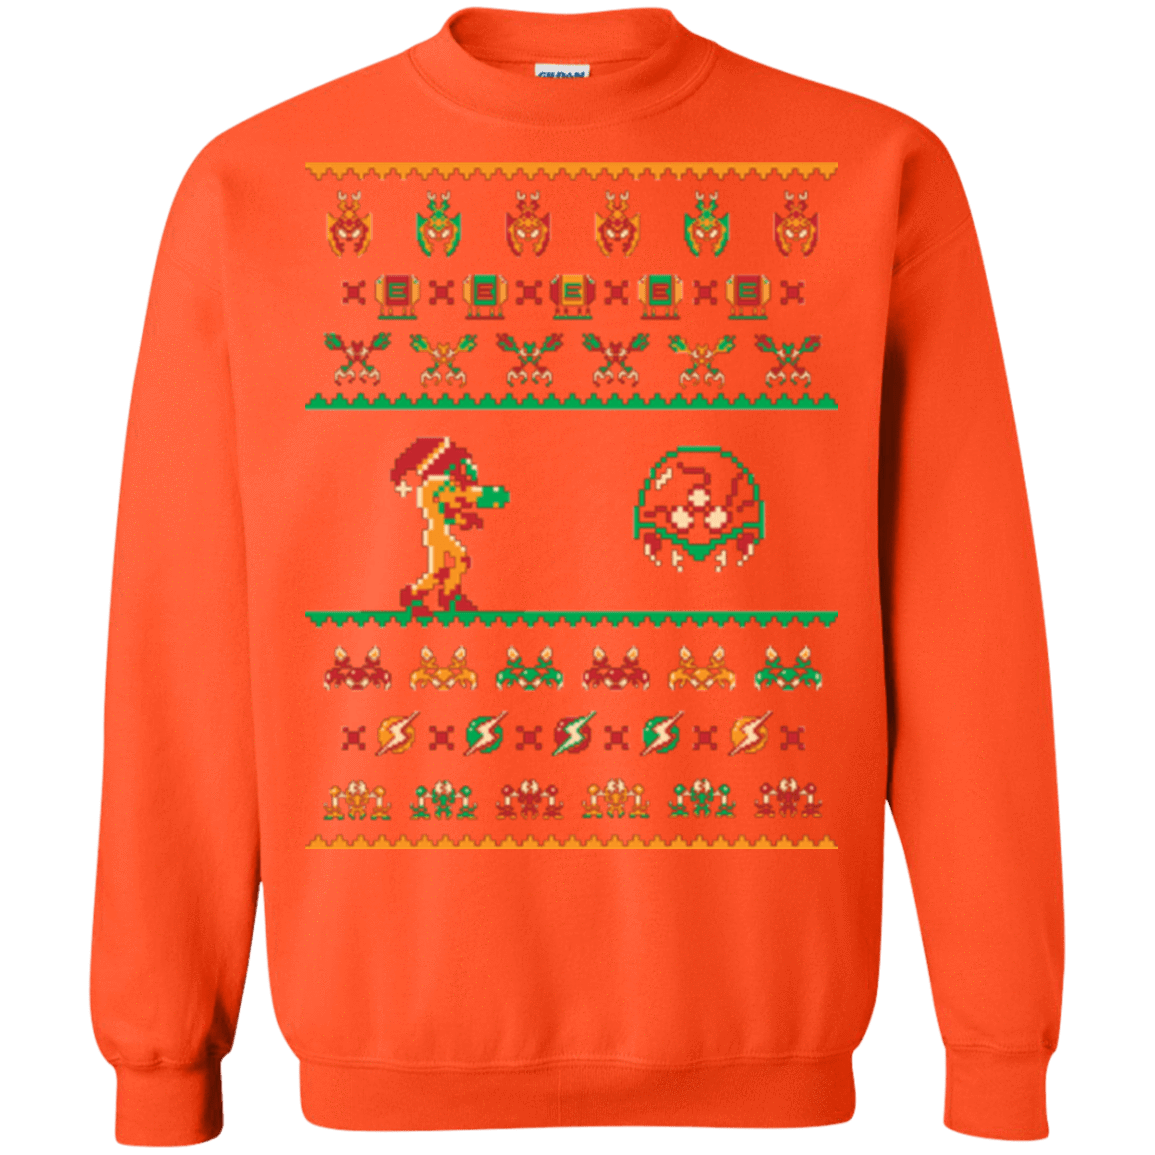 Sweatshirts Orange / Small We Wish You A Metroid Christmas Crewneck Sweatshirt